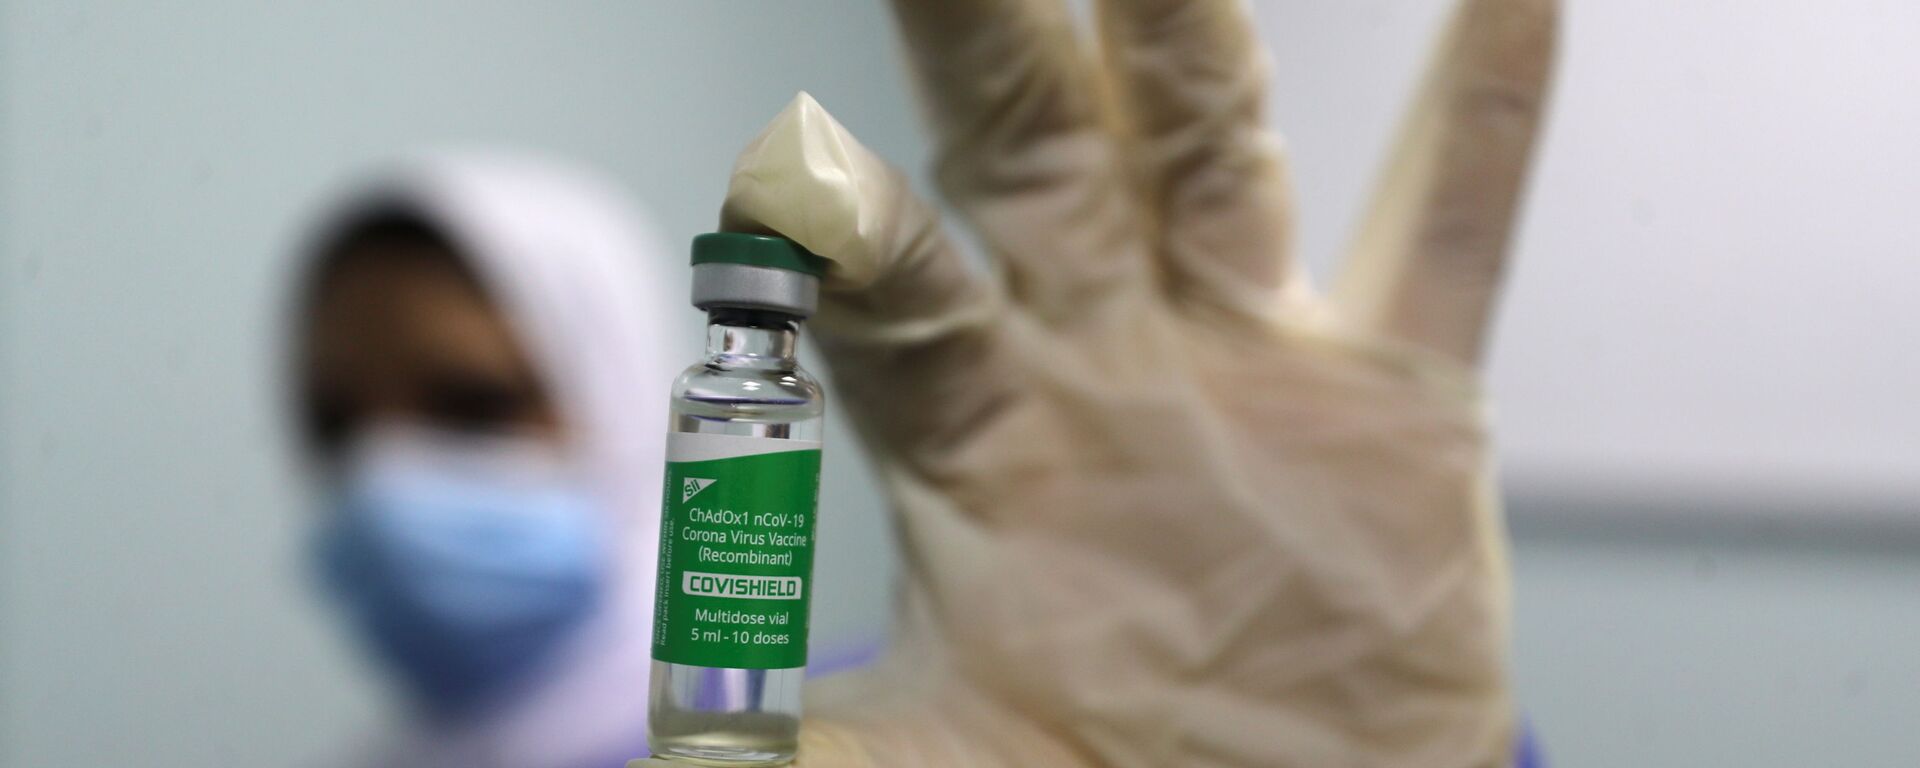 بدء تطعيم واسع النطاق في مصر ضد فيروس كورونا (كوفيد-19)، القاهرة، 4 مارس 2021 - سبوتنيك عربي, 1920, 13.08.2021